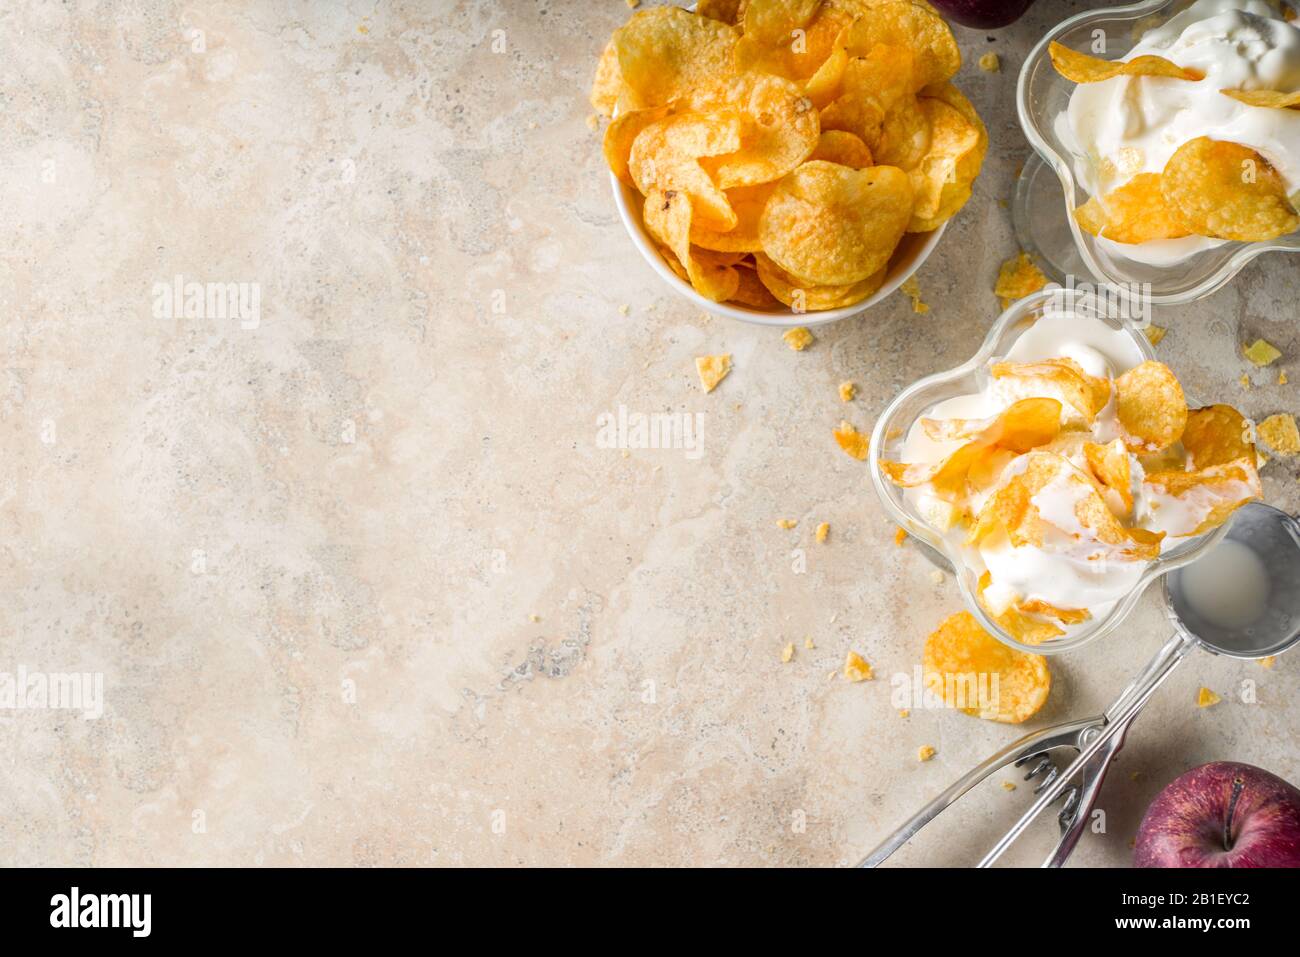 Gelato americano alla moda in stile New york. Gelato alla vaniglia dolce e salato con mele e patatine fritte. Dolce Acido Moderno Dessert. Foto Stock